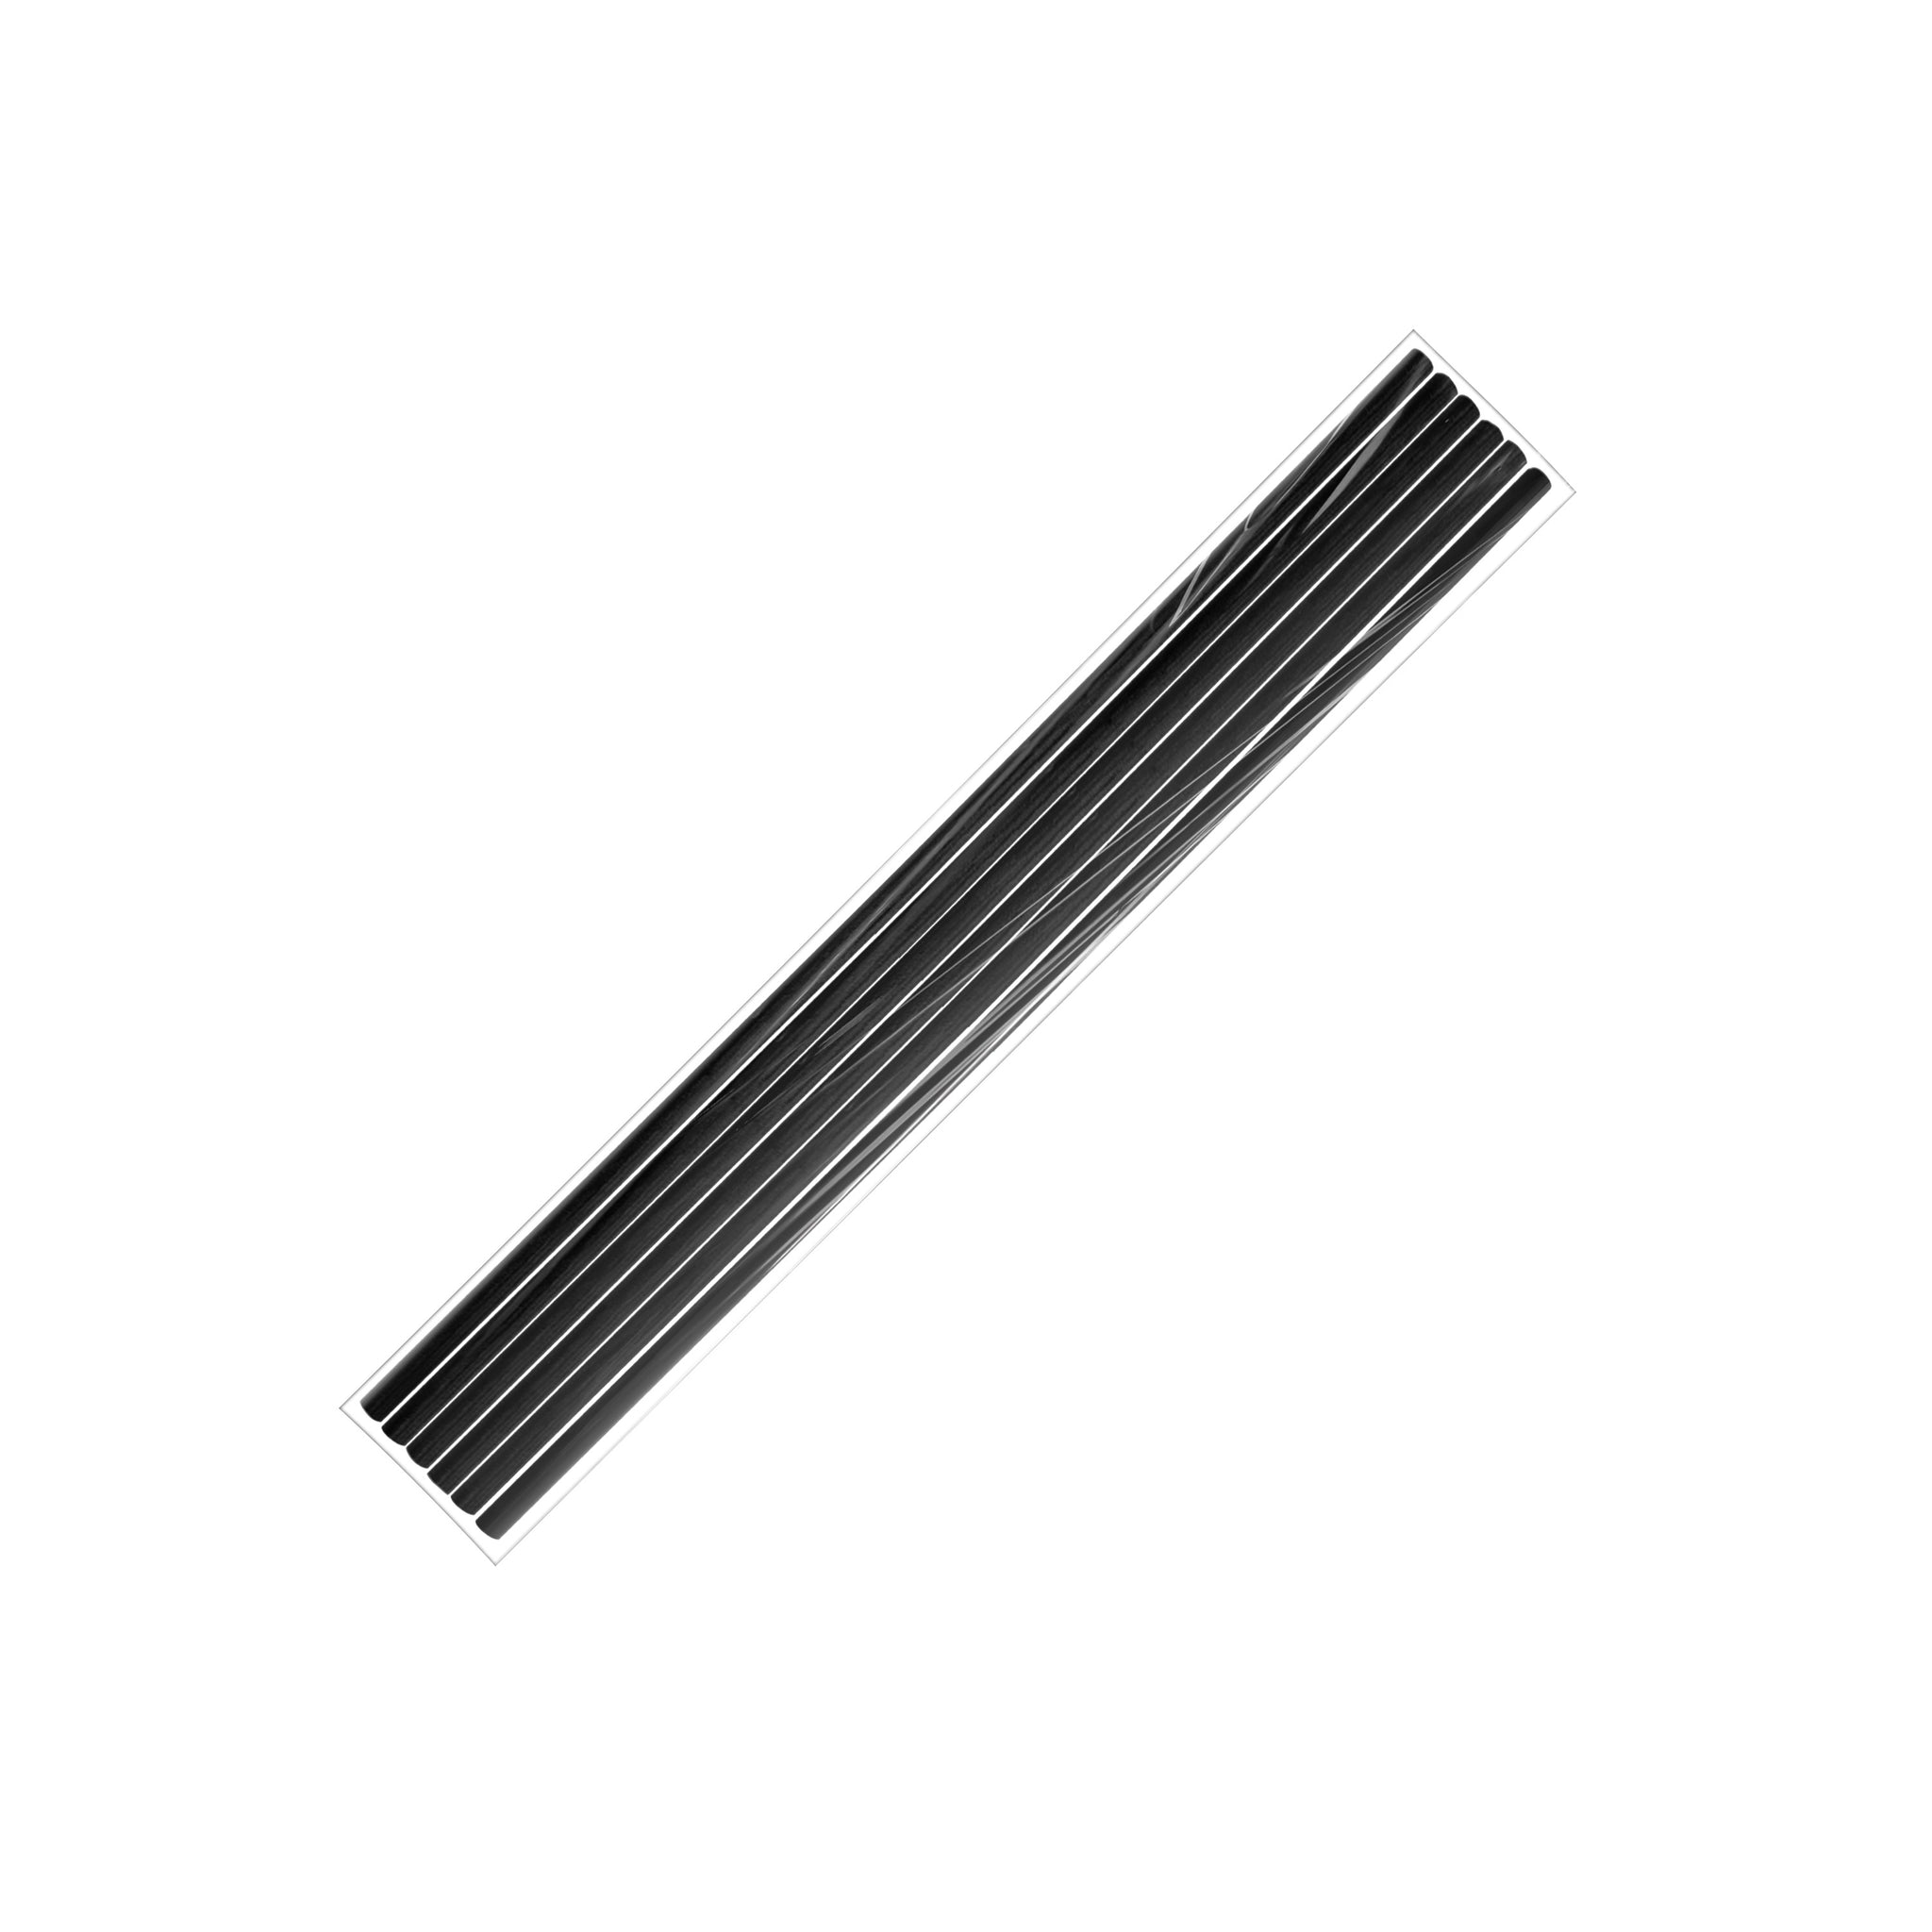 Diffuser Stick (Black Fiber) - Thick (19cm/7.5")